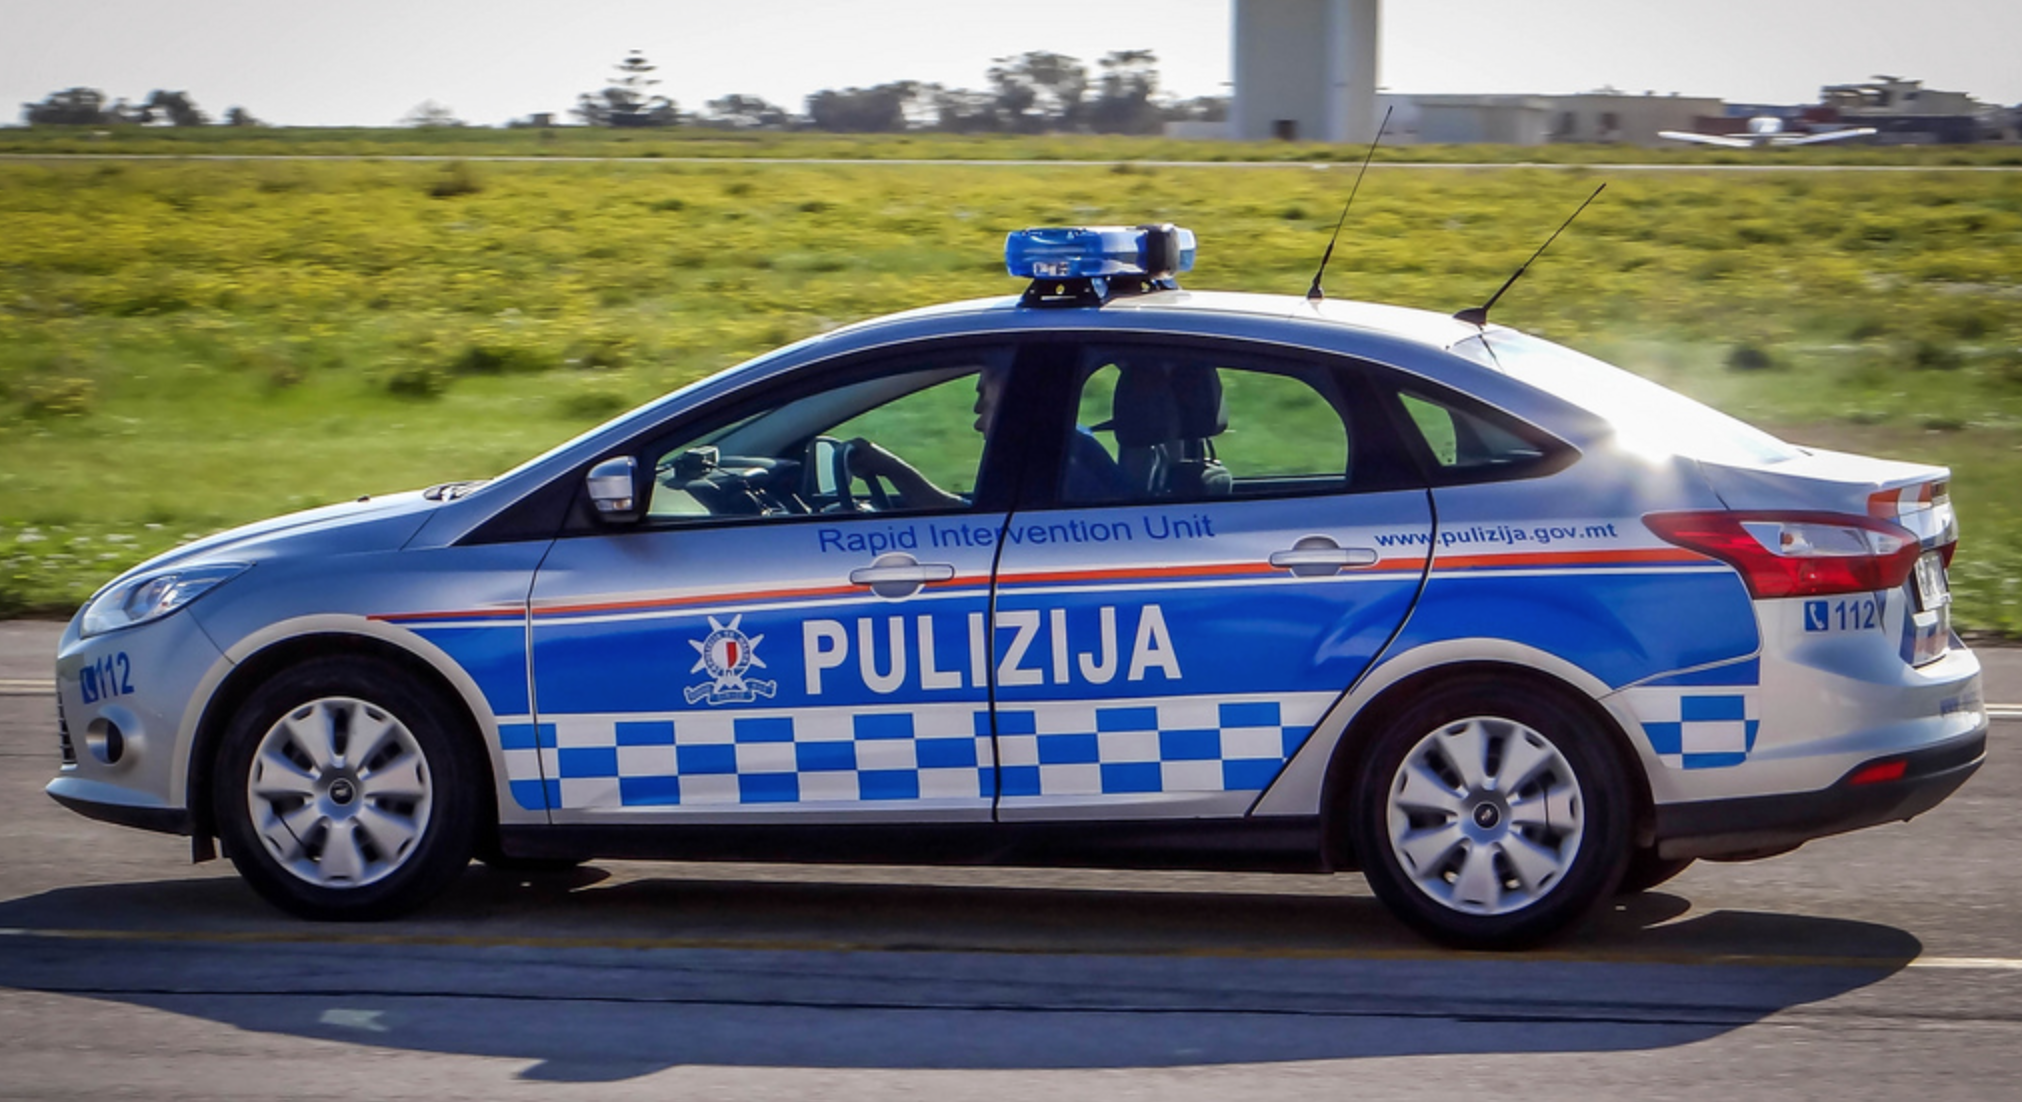 Μάλτα: Άστυνομικοί της Τροχαίας ερευνώνται για απάτη, μετά τη δήλωση εικονικών υπερωριών